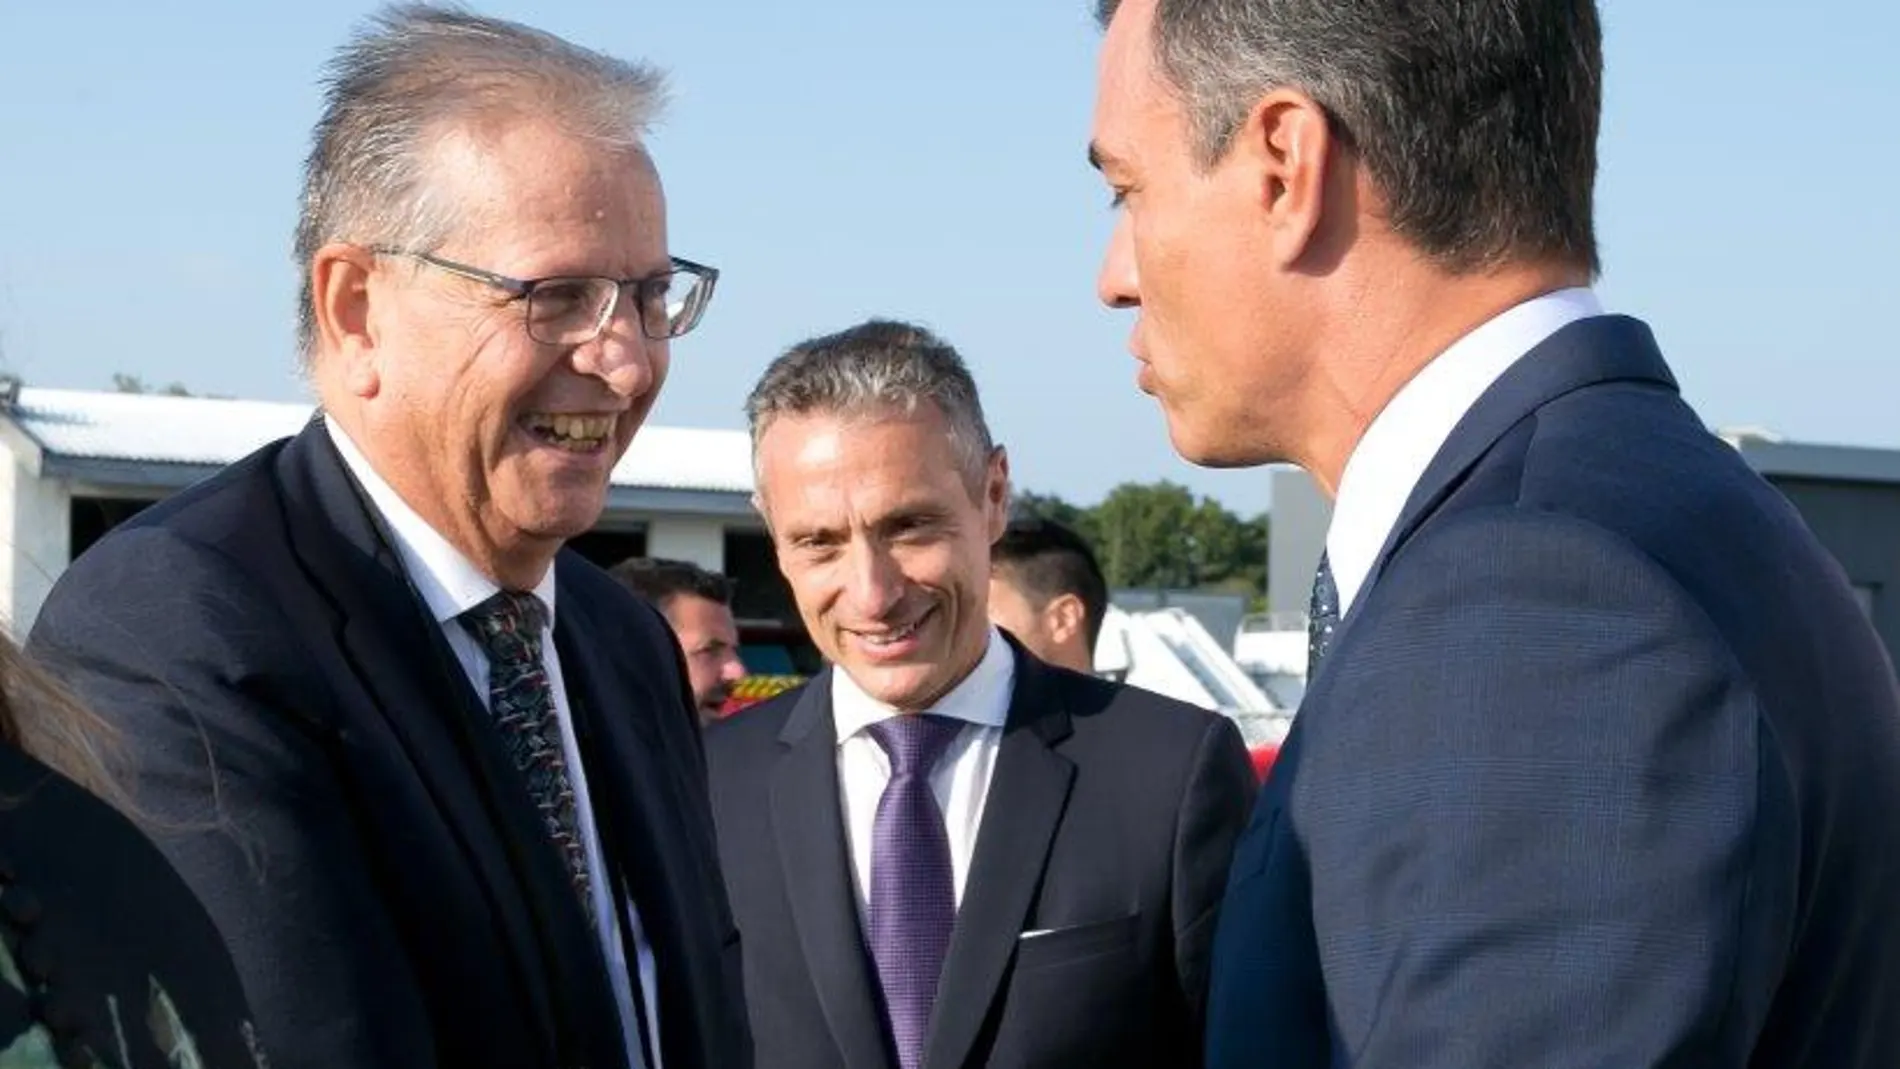 El cónsul general de España en Bayona, Álvaro Alabart, saluda al presidente Sánchez cuando éste llegó a Biarrtiz para la cumbre del G7 el 24 de agosto de 2019